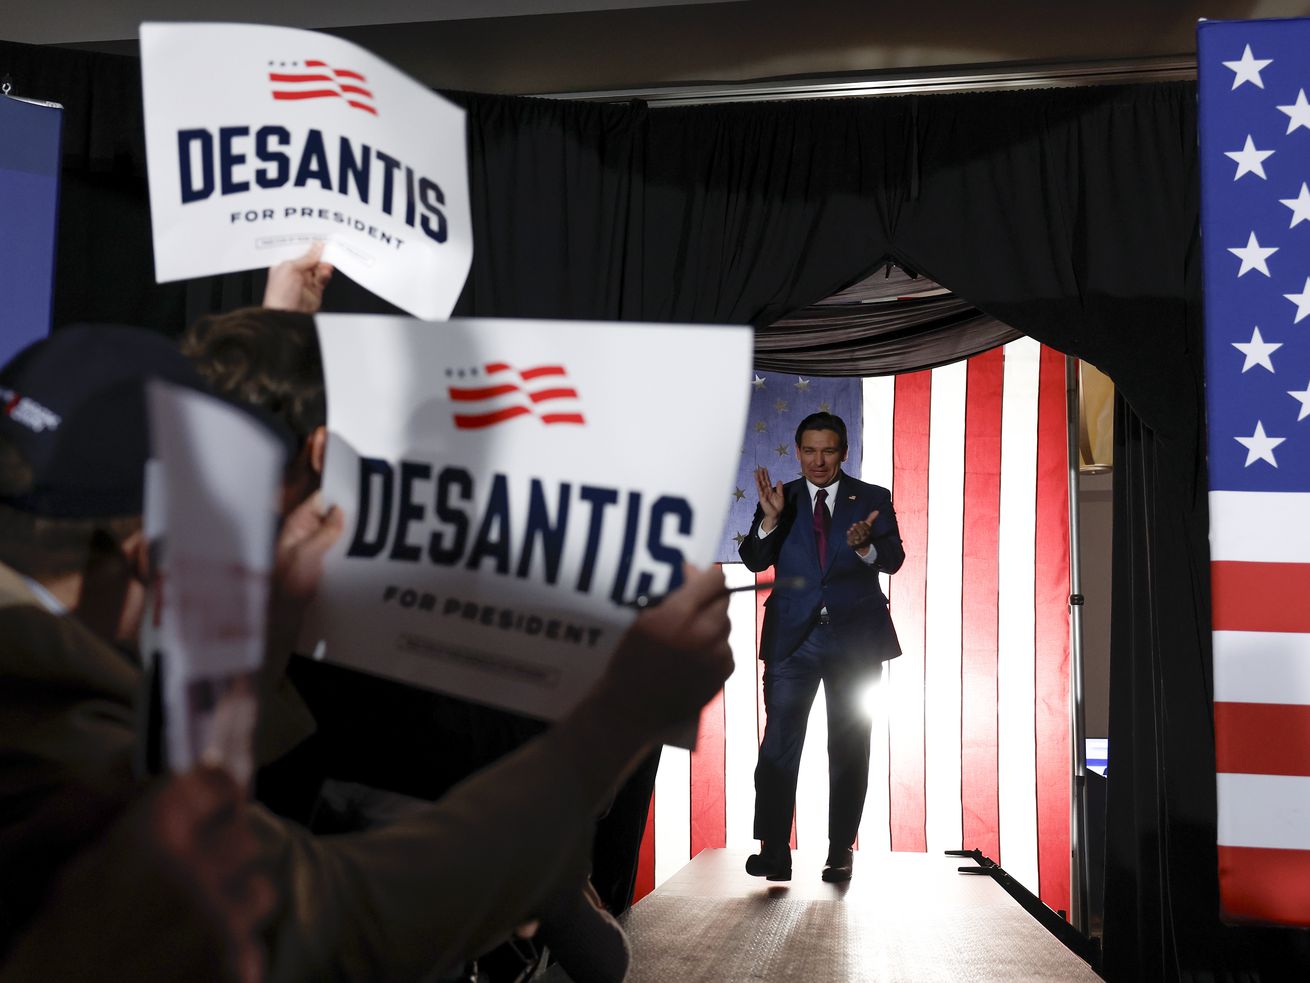 People wave DeSantis signs as Florida Gov. Ron DeSantis enters the room.